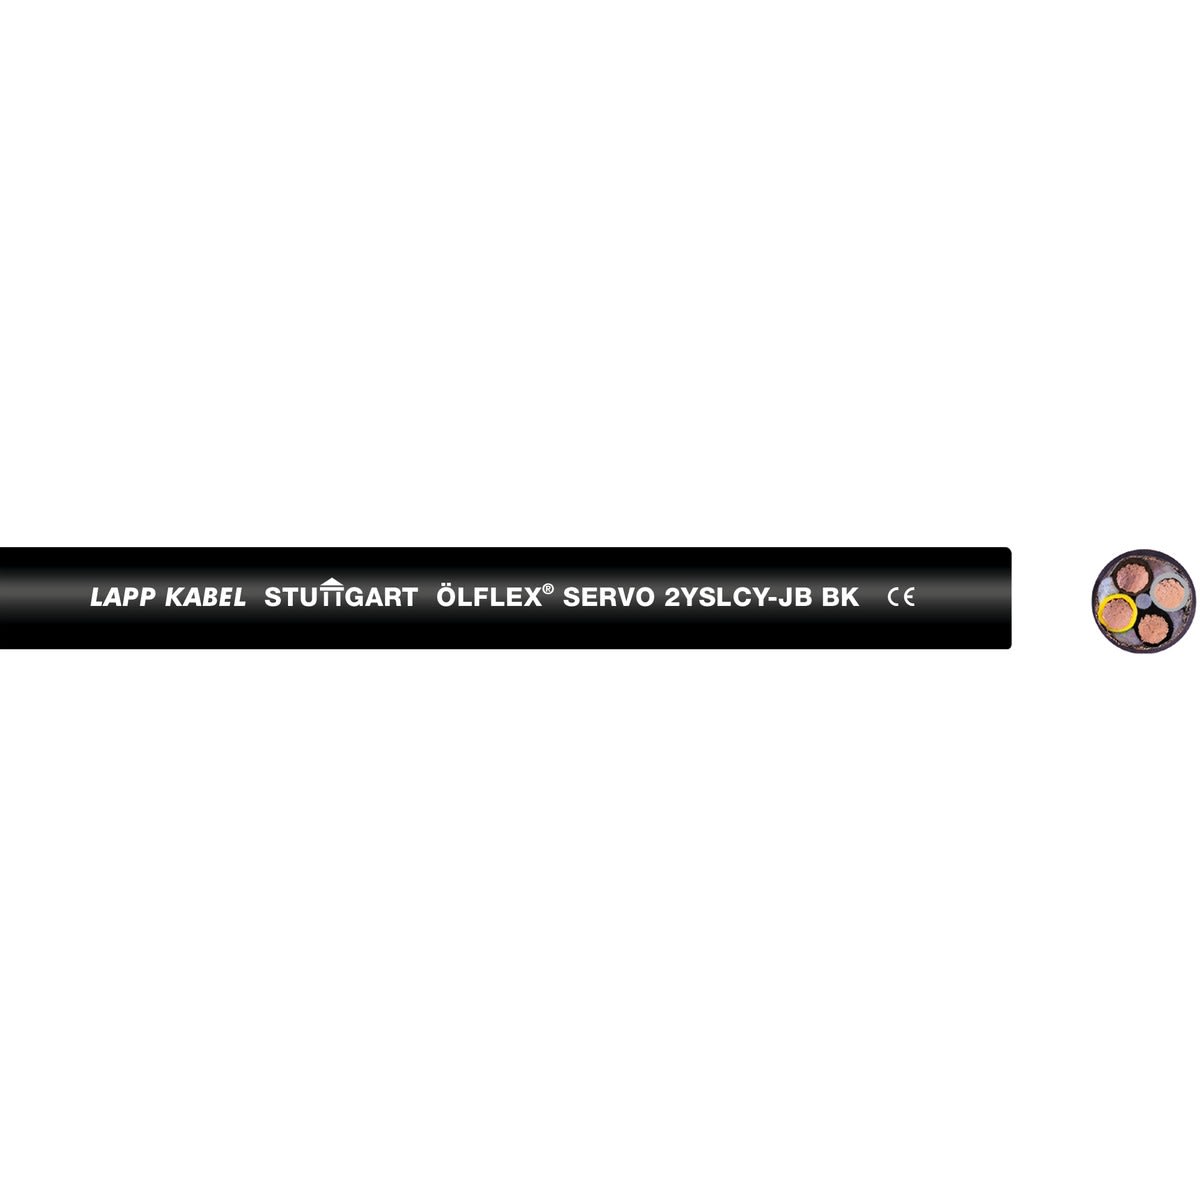 Lapp - ÖLFLEX SERVO 2YSLCY-JB BK 4G10